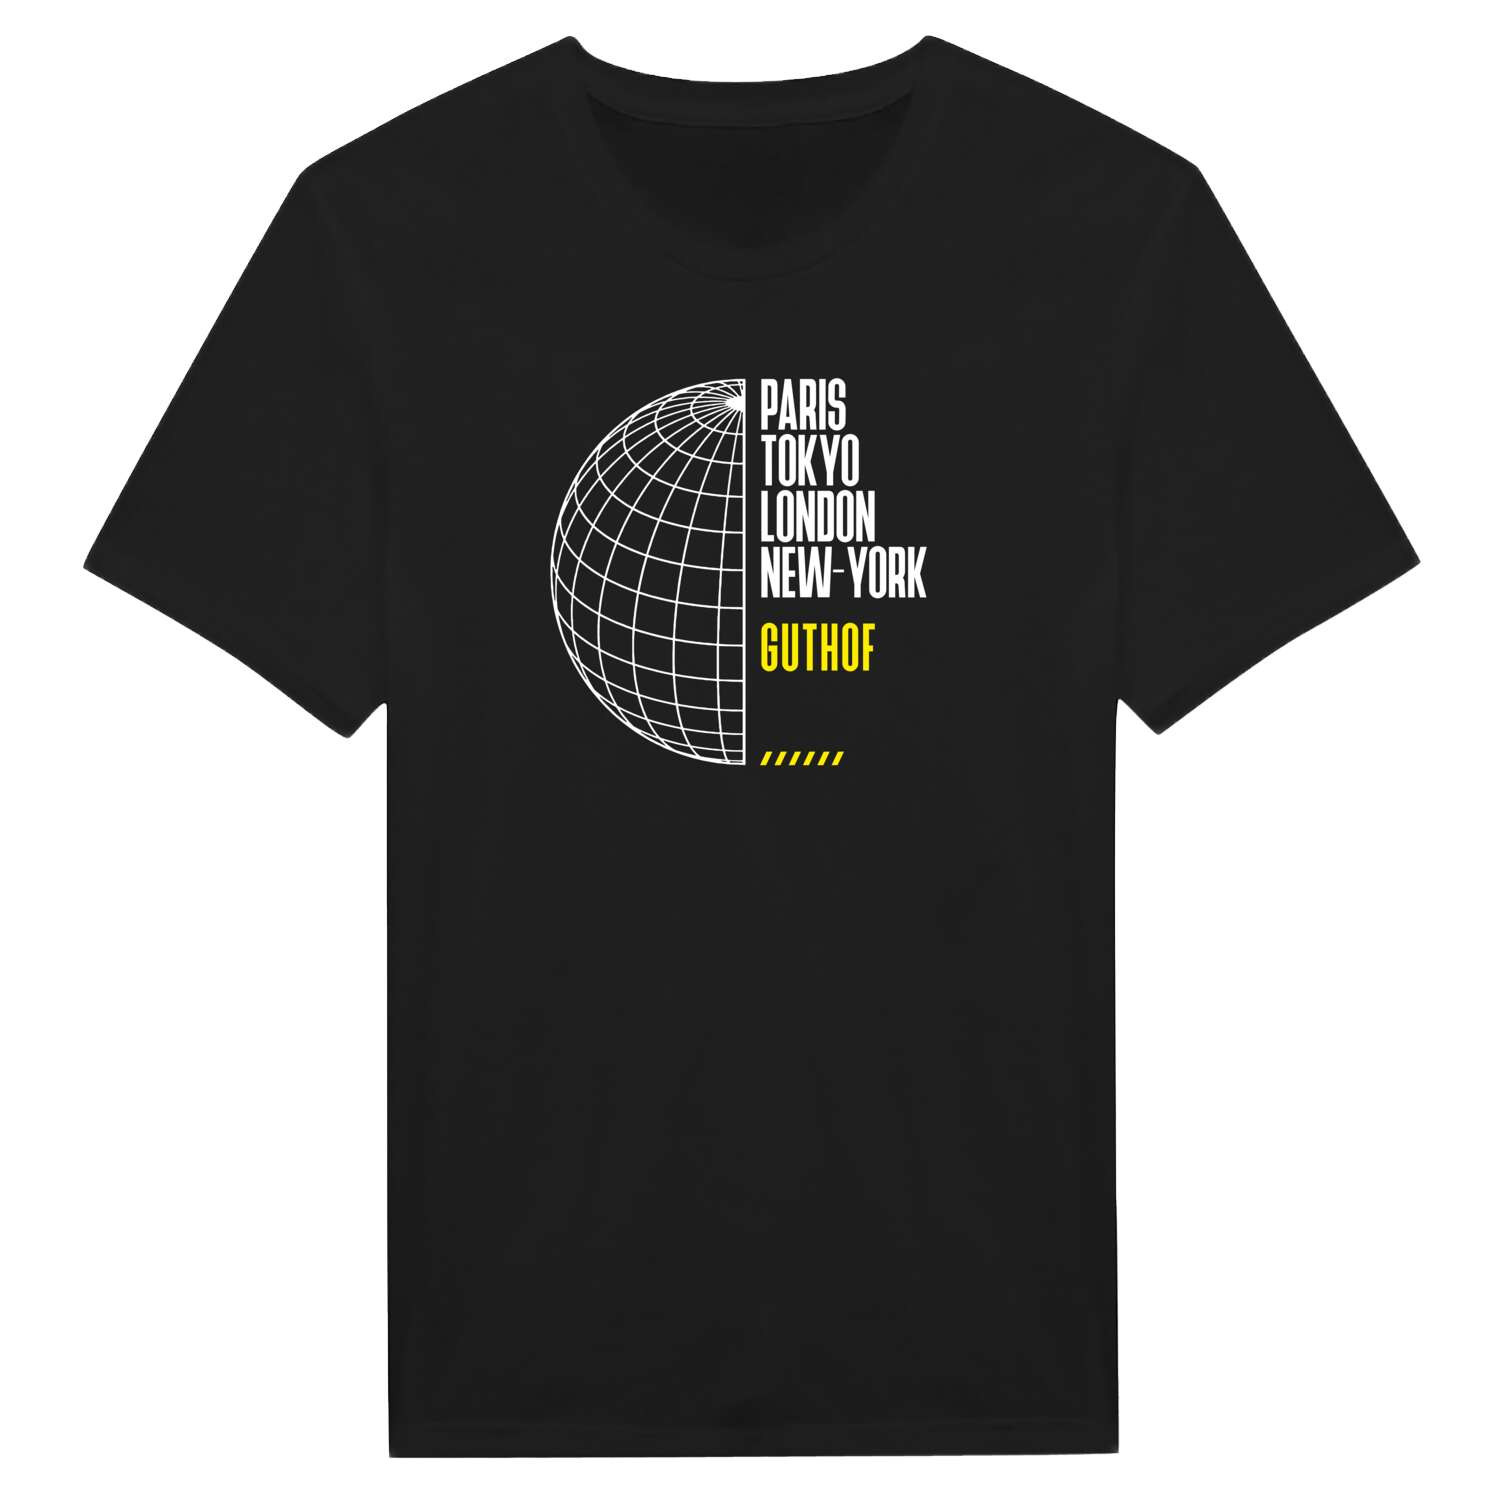 Guthof T-Shirt »Paris Tokyo London«